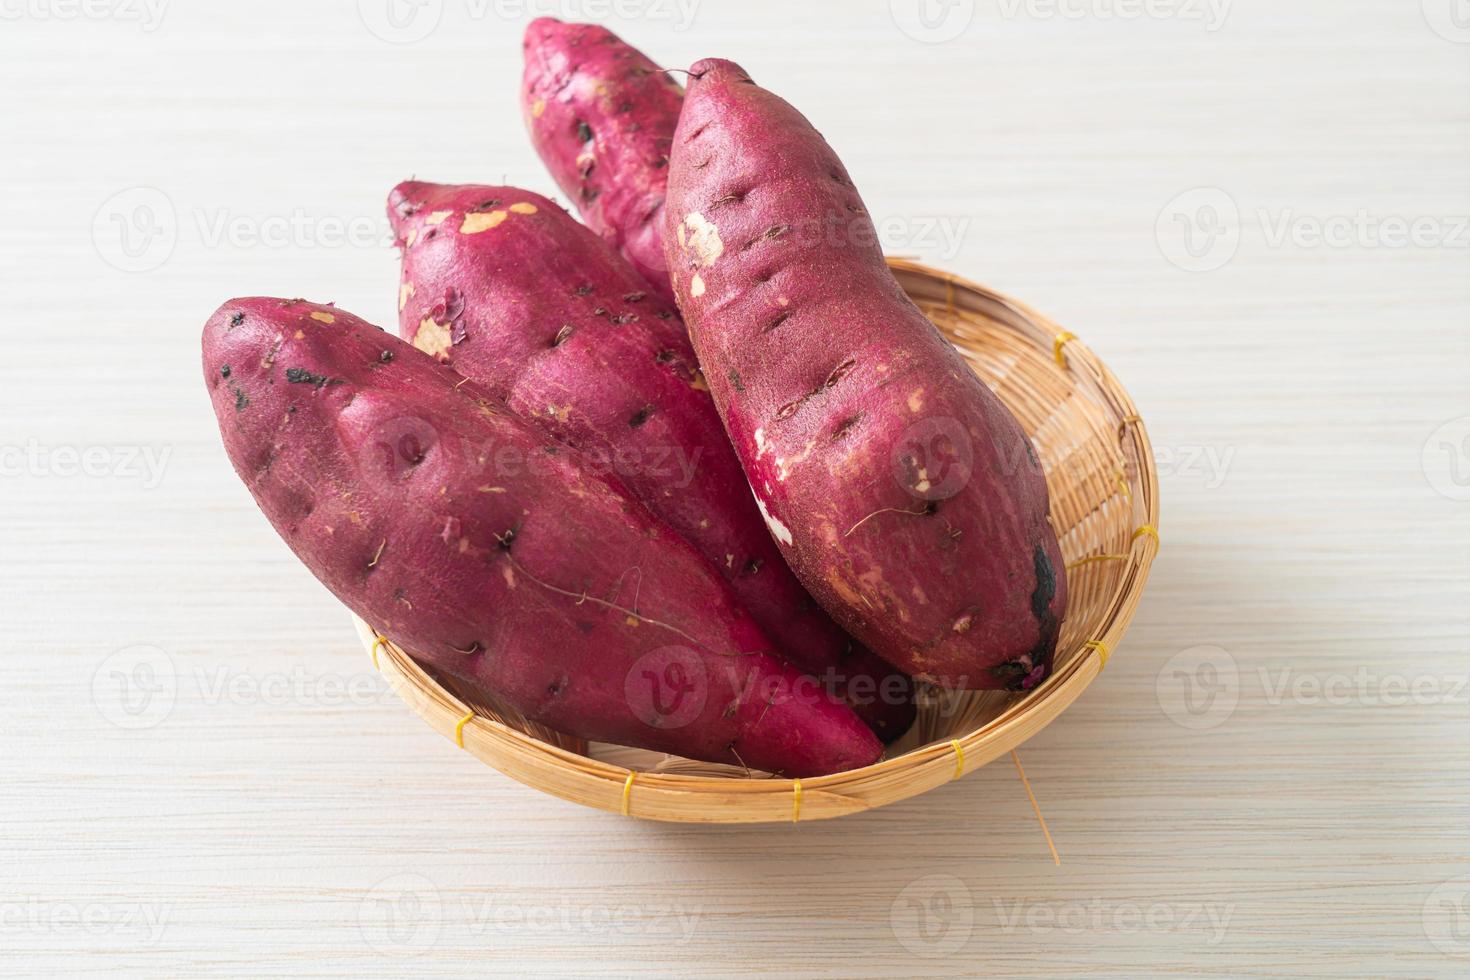 patate dolci giapponesi su cestino foto